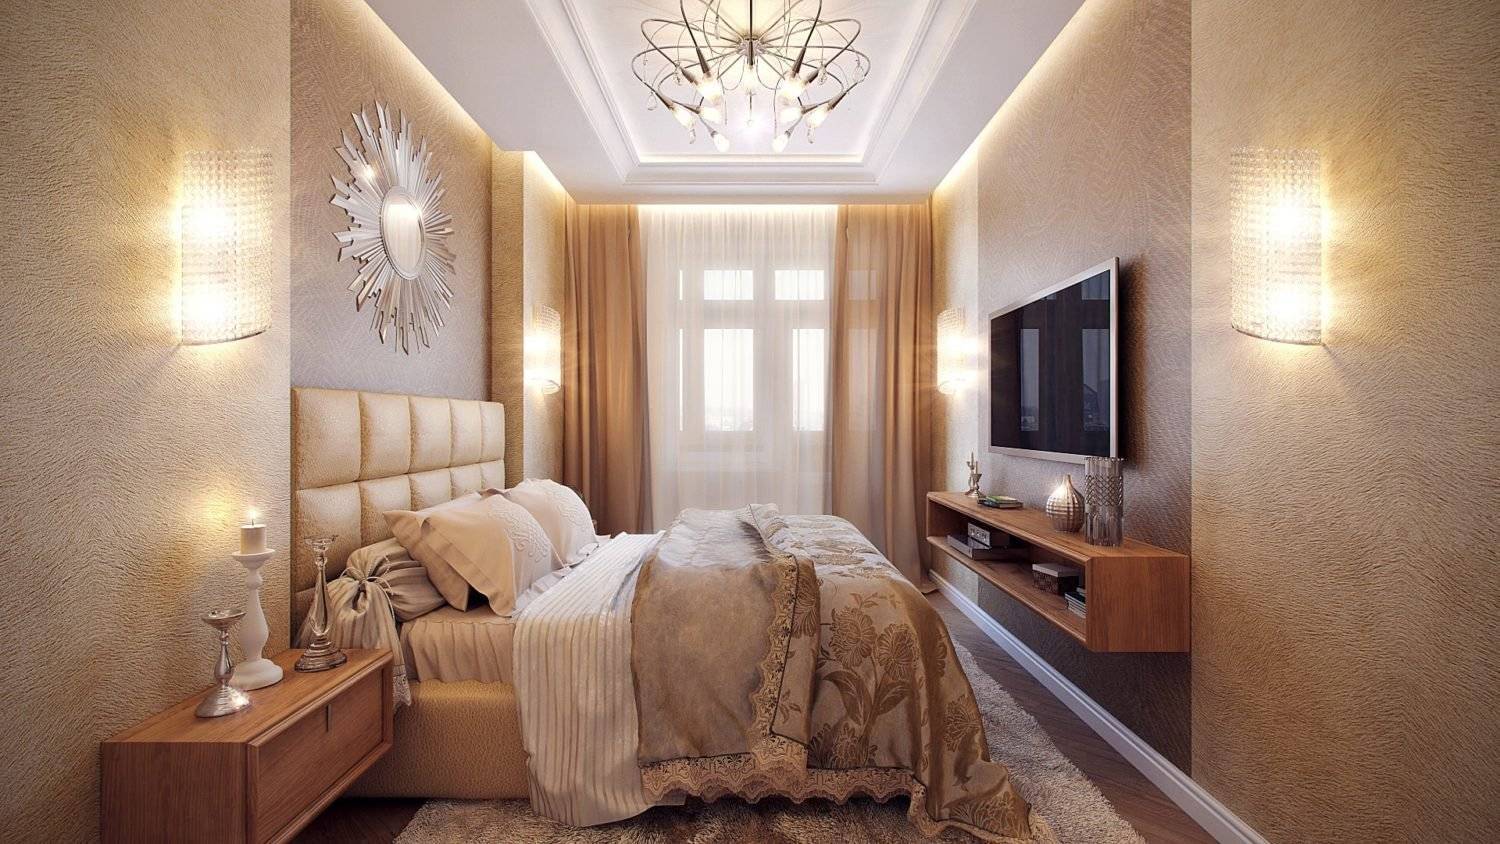 Ремонт в спальне дизайн фото в квартире